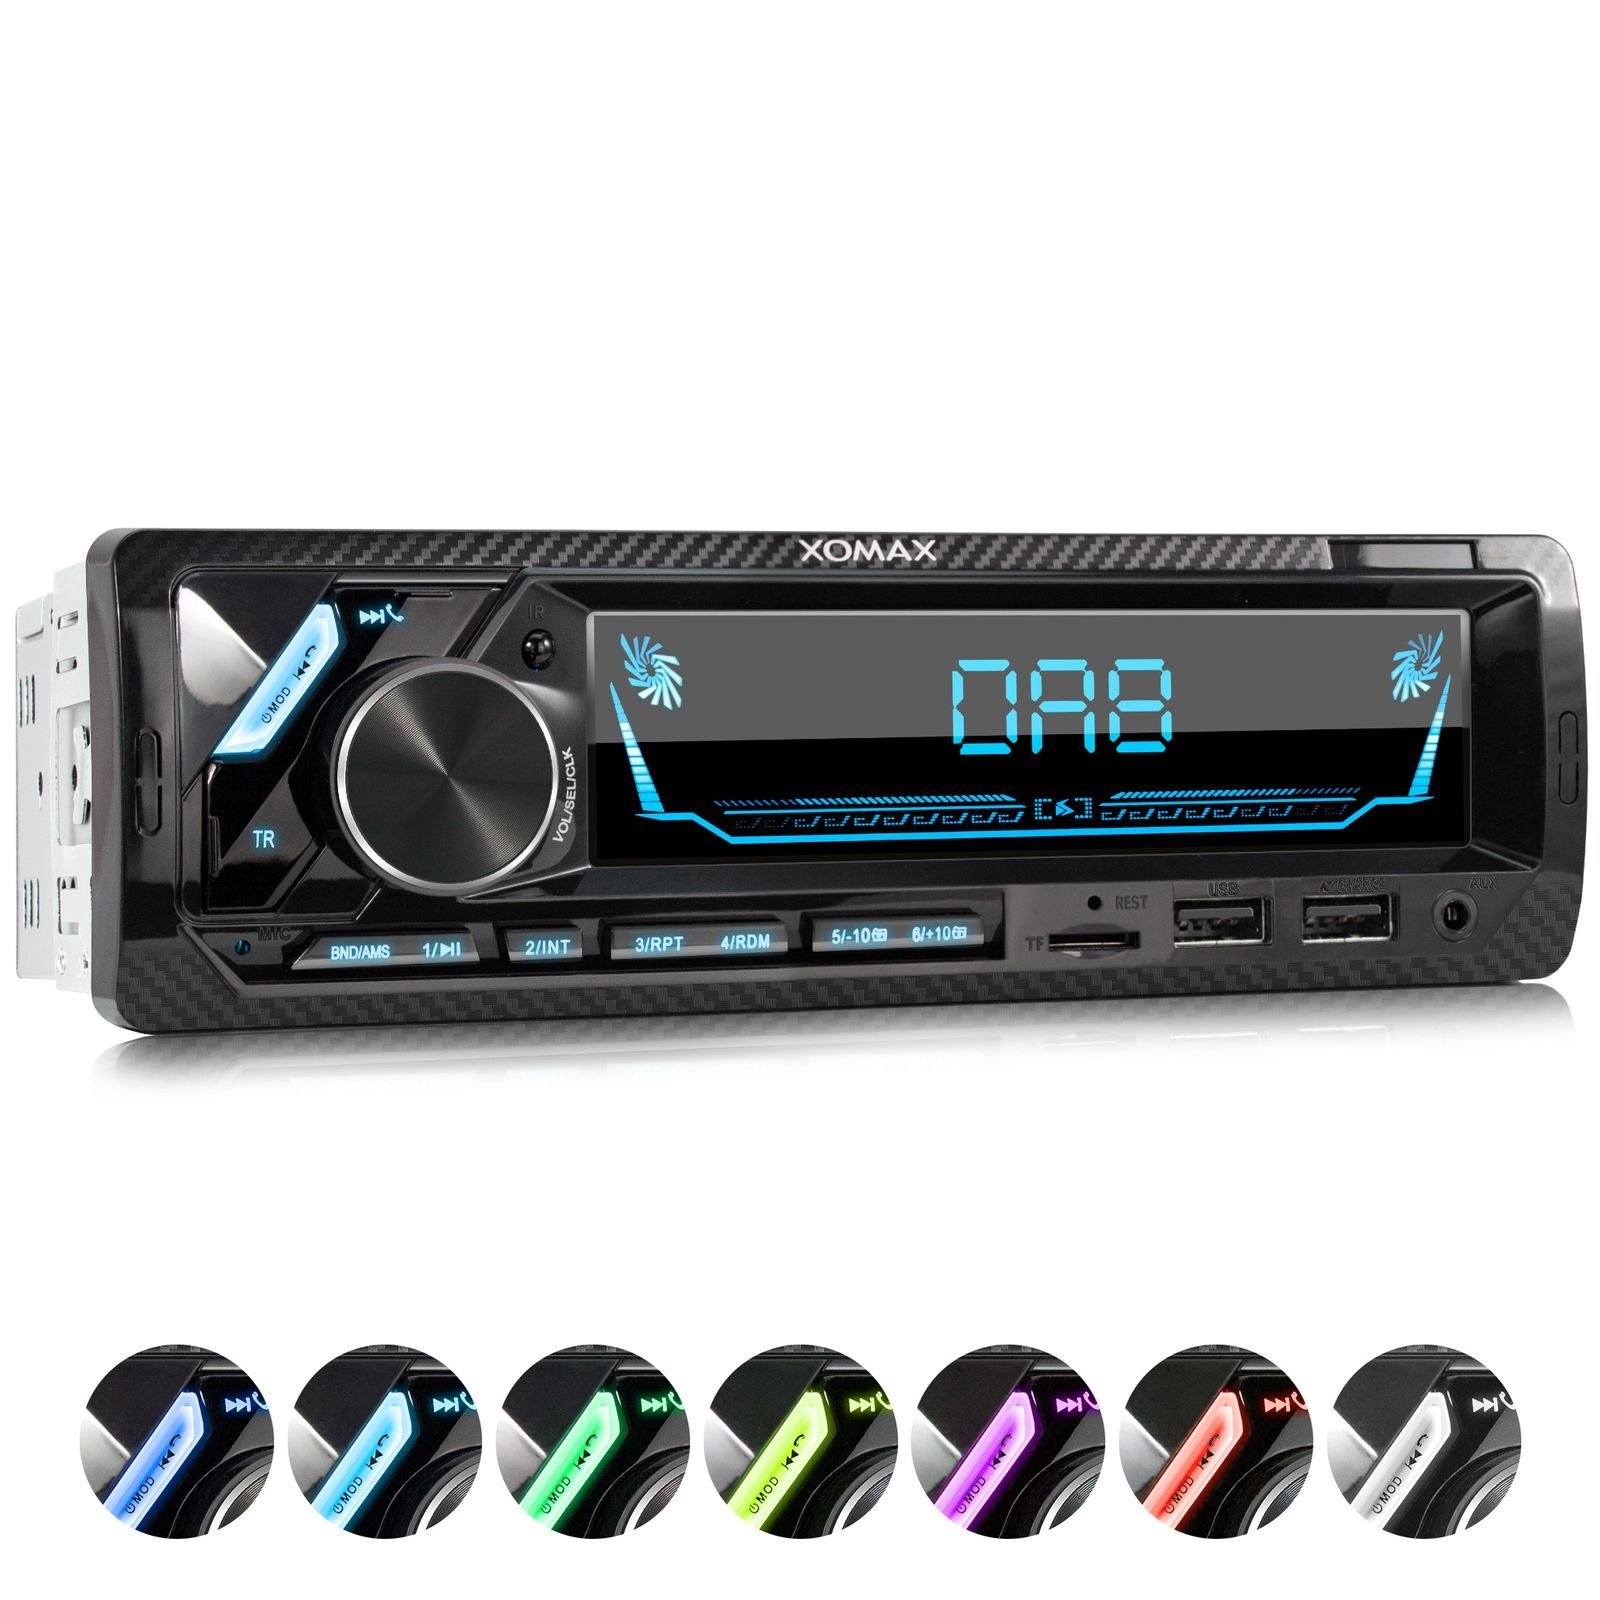 XOMAX Autoradio (XOMAX XM-RD283: 1DIN, Autoradio mit DAB+, Bluetooth, USB,  AUX IN, ohne Laufwerk) online kaufen | OTTO